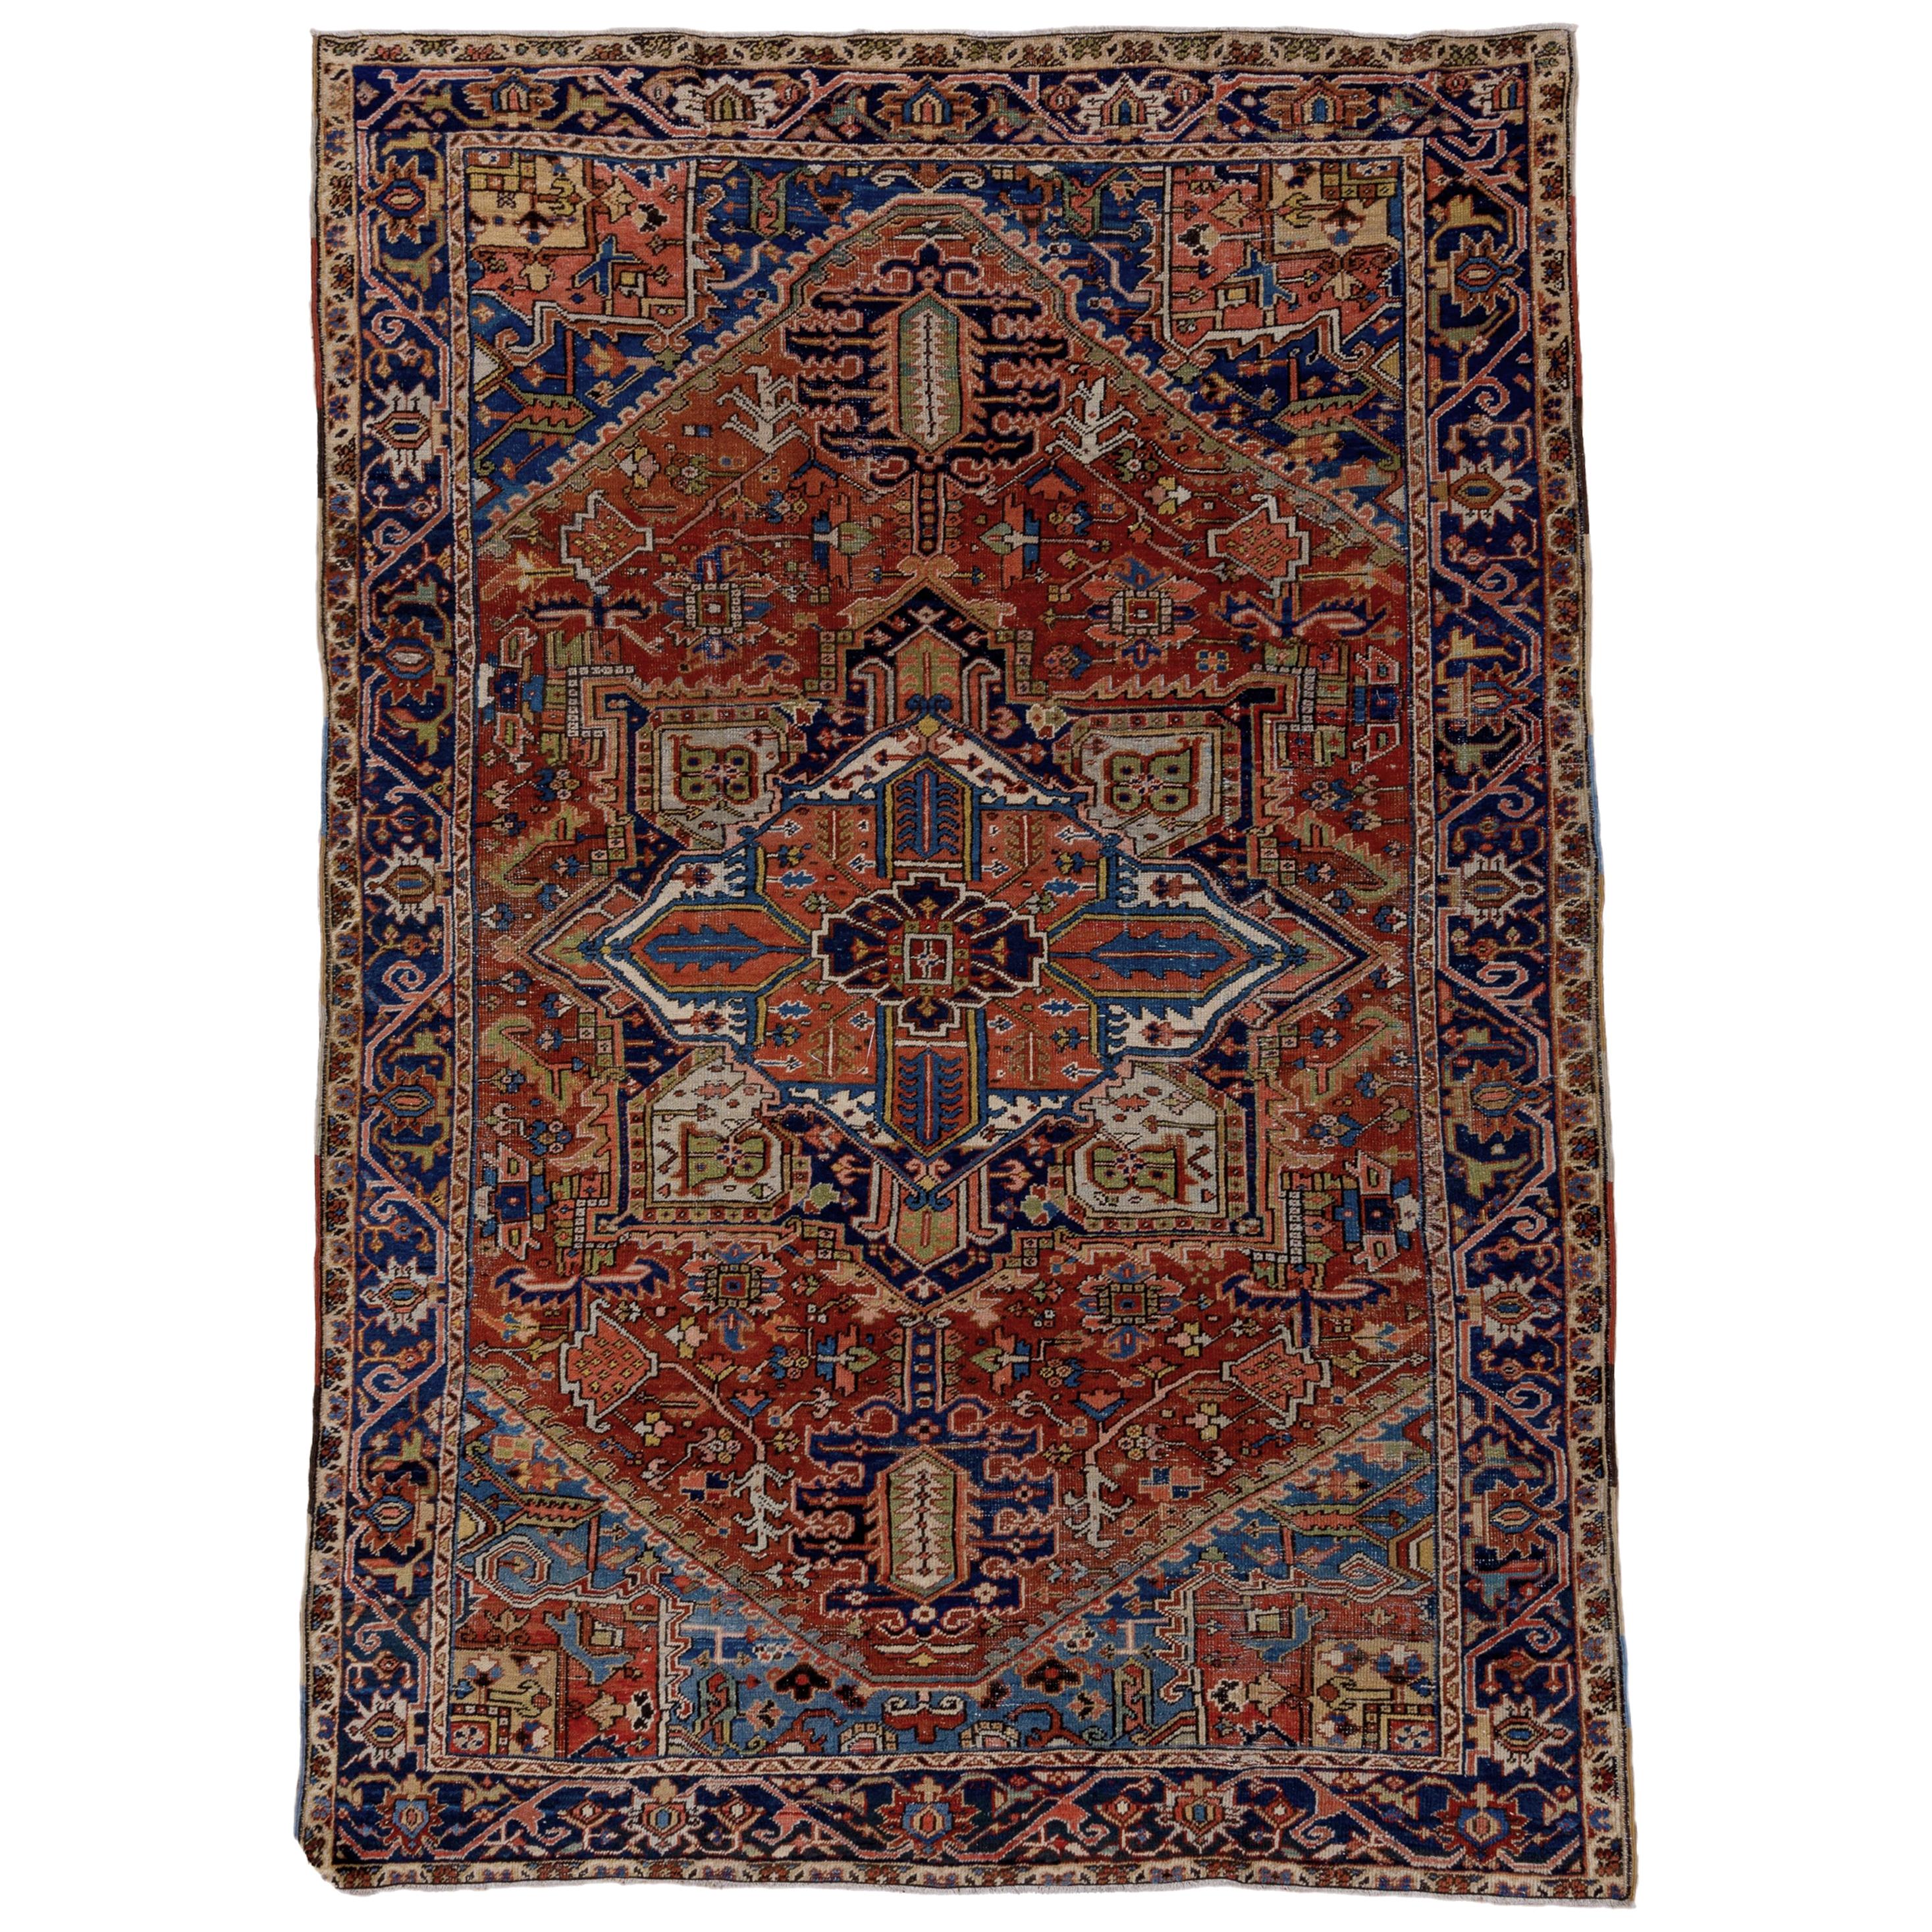 Antique Heriz Carpet, Colorful Palette